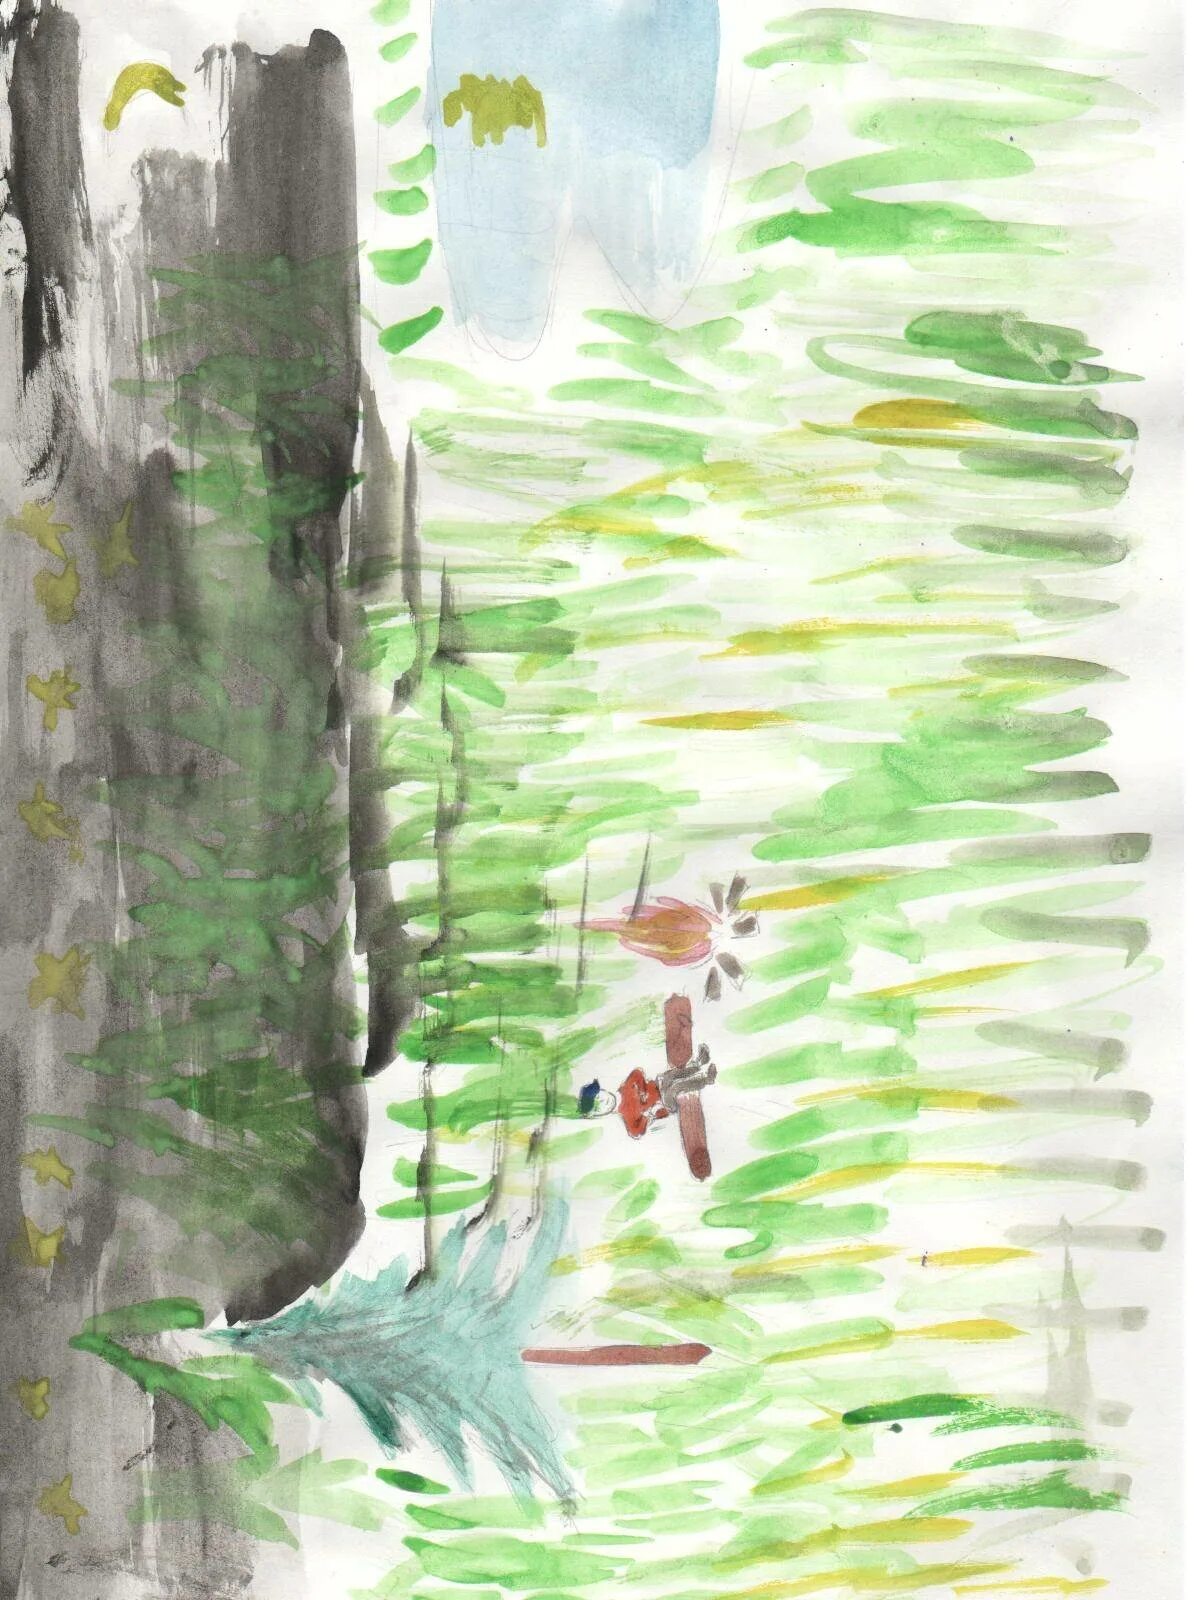 Рисунок по литературе васюткино озеро. Иллюстрация Васюткино озеро 5 класс. Васюткино озеро 5 класс. Иллюстрация к сказке Васюткино озеро. Астафьев Васюткино озеро иллюстрации.